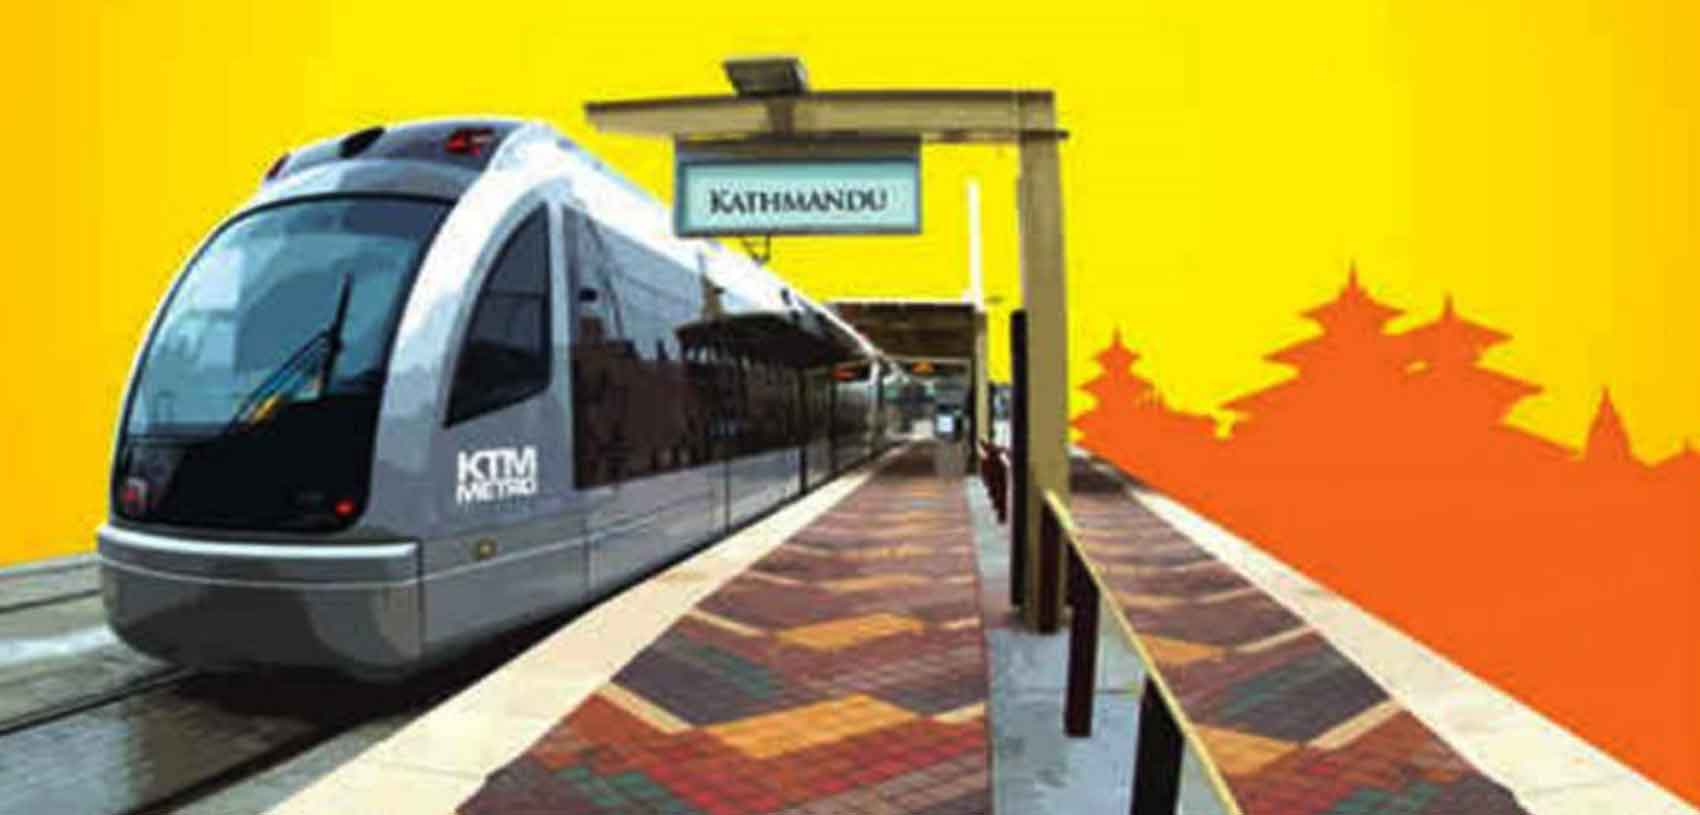 काठमाडौं–रक्सौल विद्युतीय रेलमार्गको डीपीआर तयार गर्न भारतीय कम्पनीलाई अनुमति